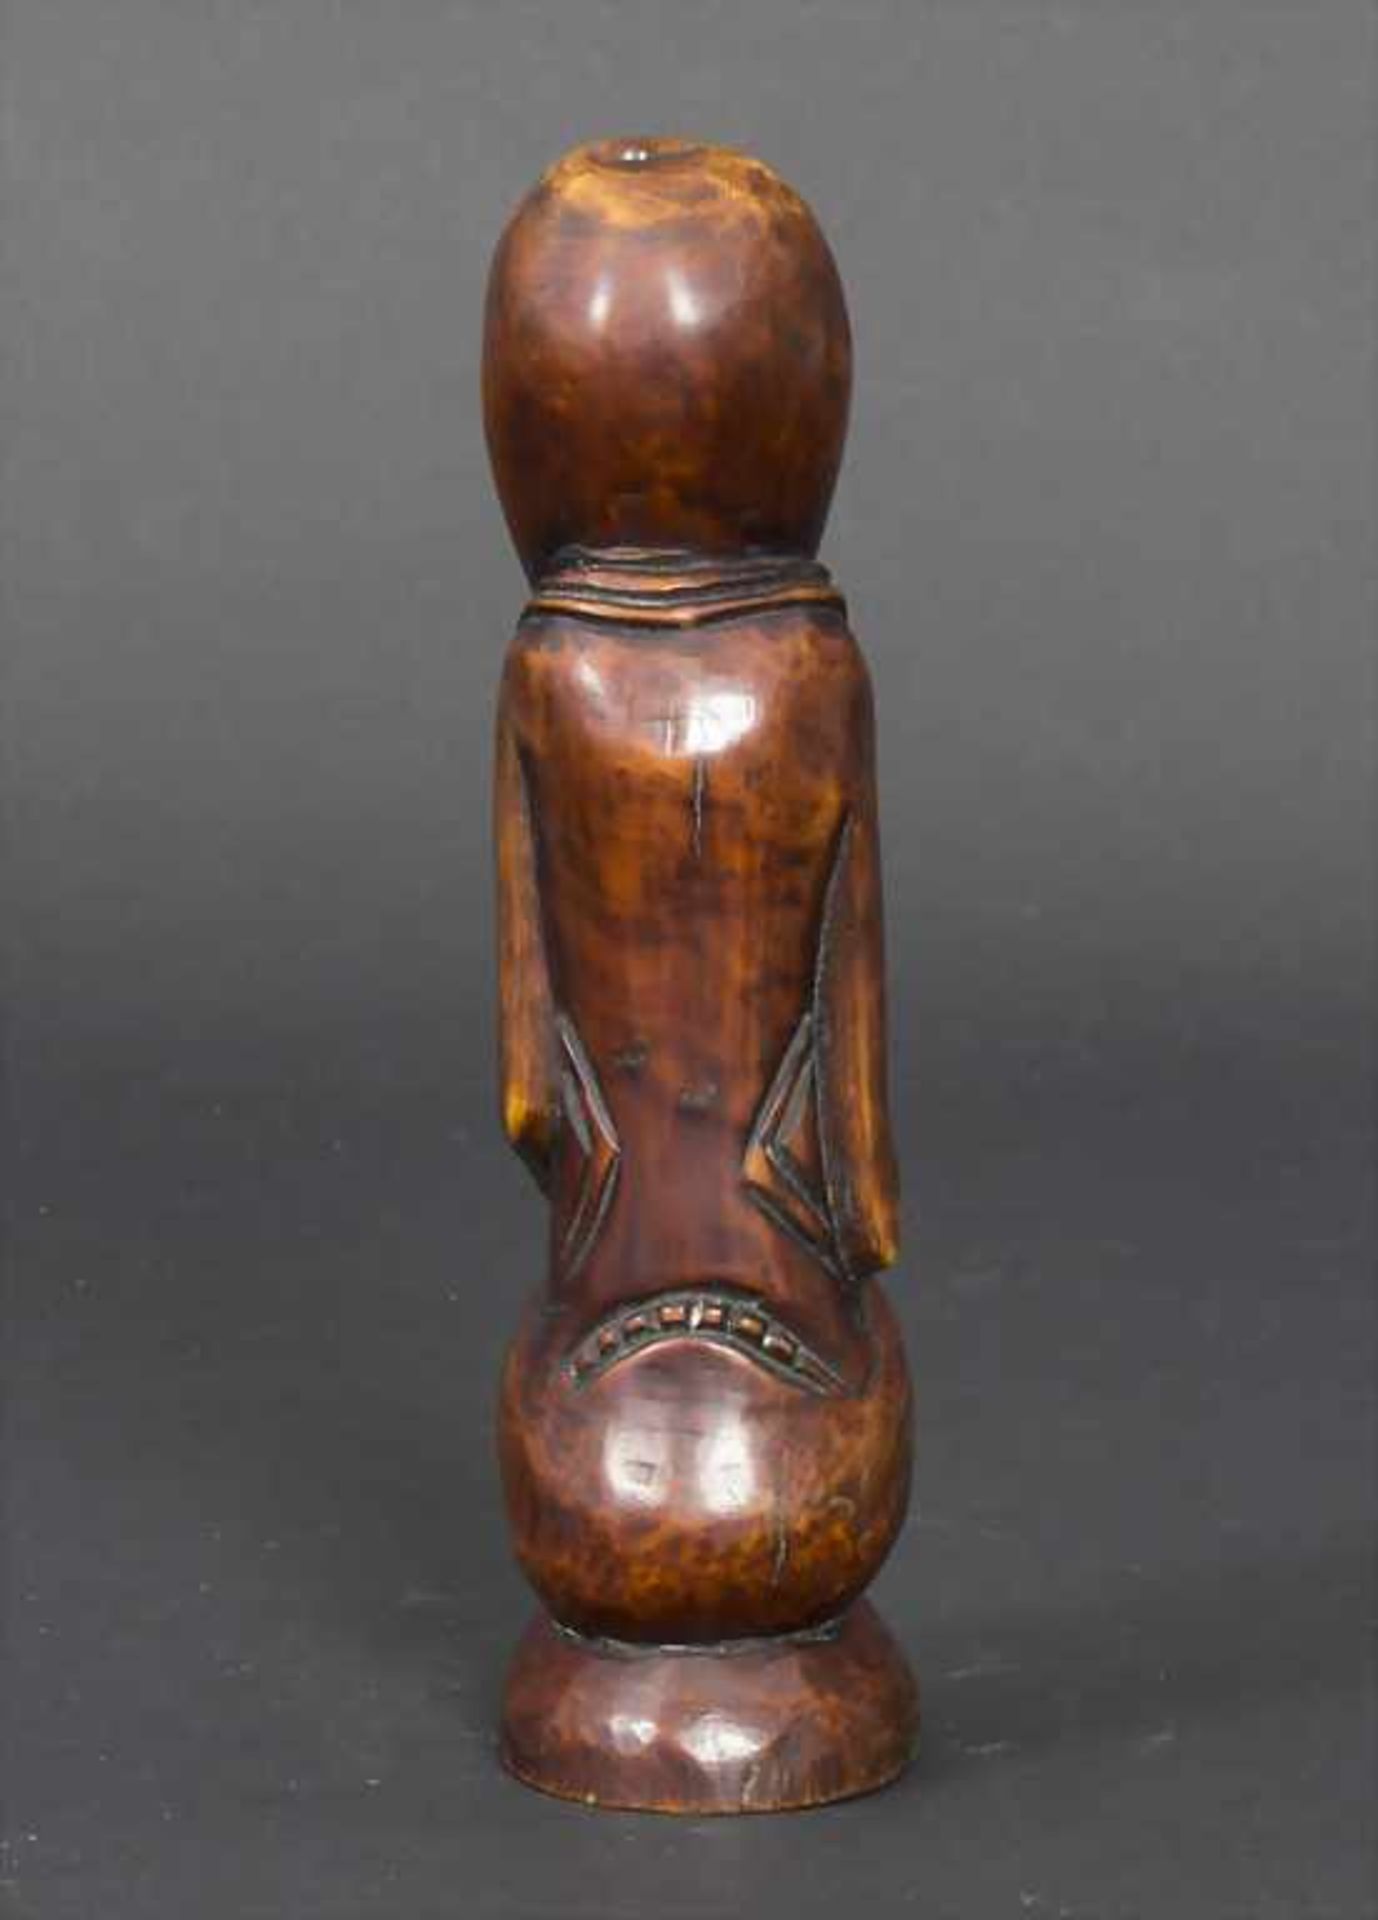 Elfenbein Statuette der Lega, Nordkongo, um 1930Material: Elfenbein braun patiniert,Stamm der Lega- - Bild 4 aus 4